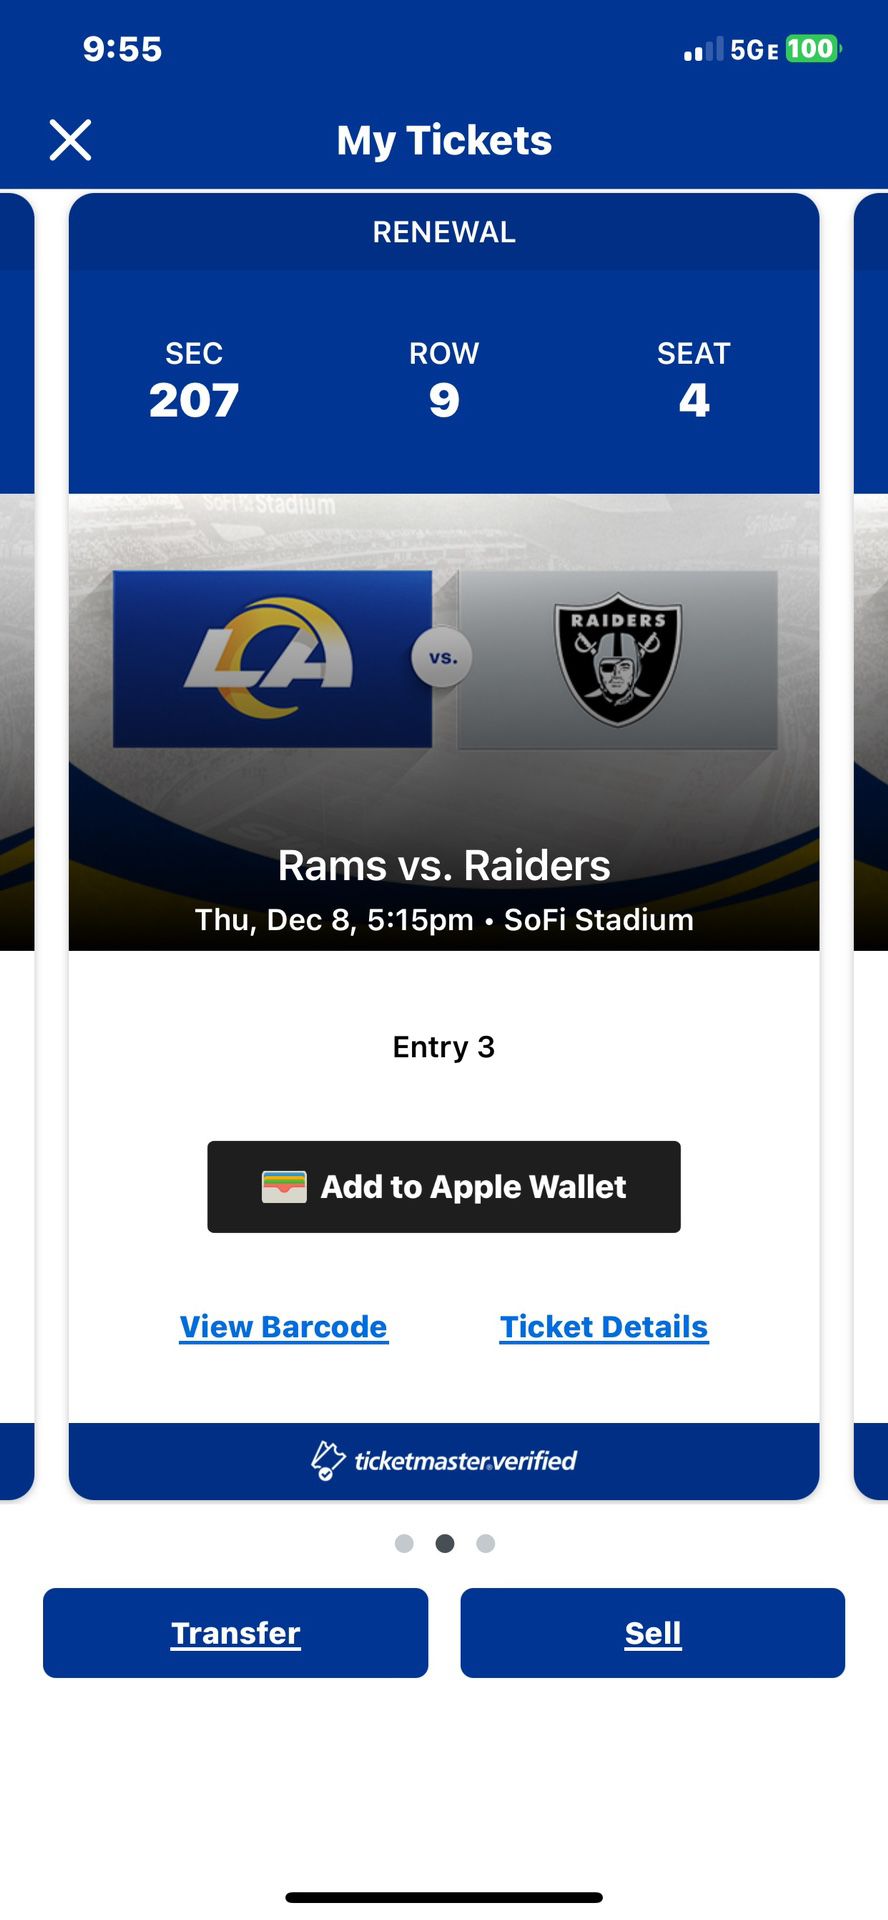 Rams Vs Raiders 2 - Tickets SEC 207 